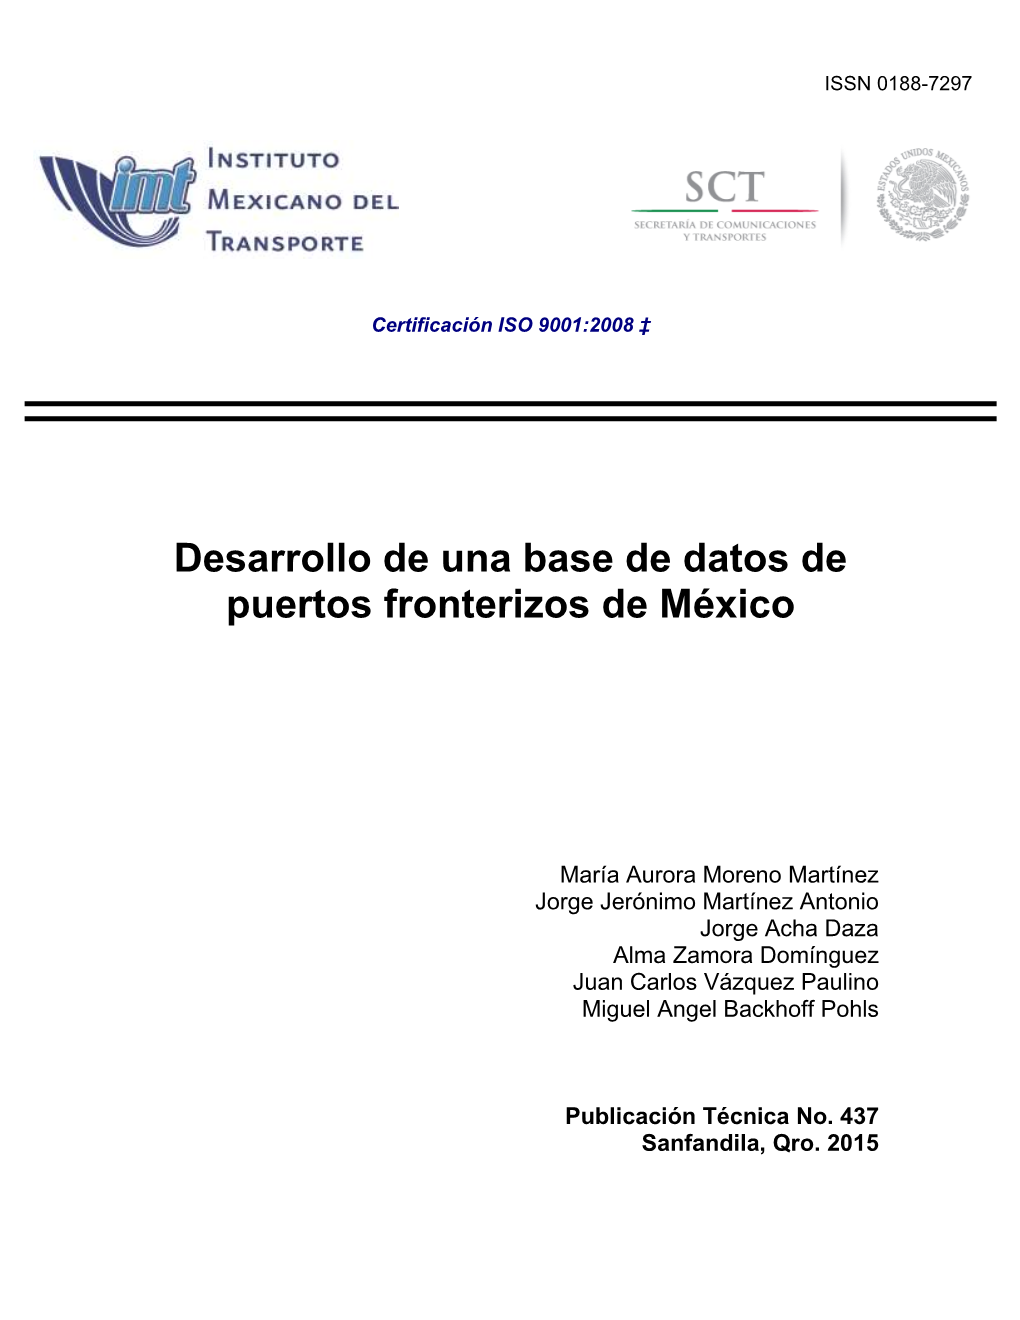 Desarrollo De Una Base De Datos De Puertos Fronterizos De México